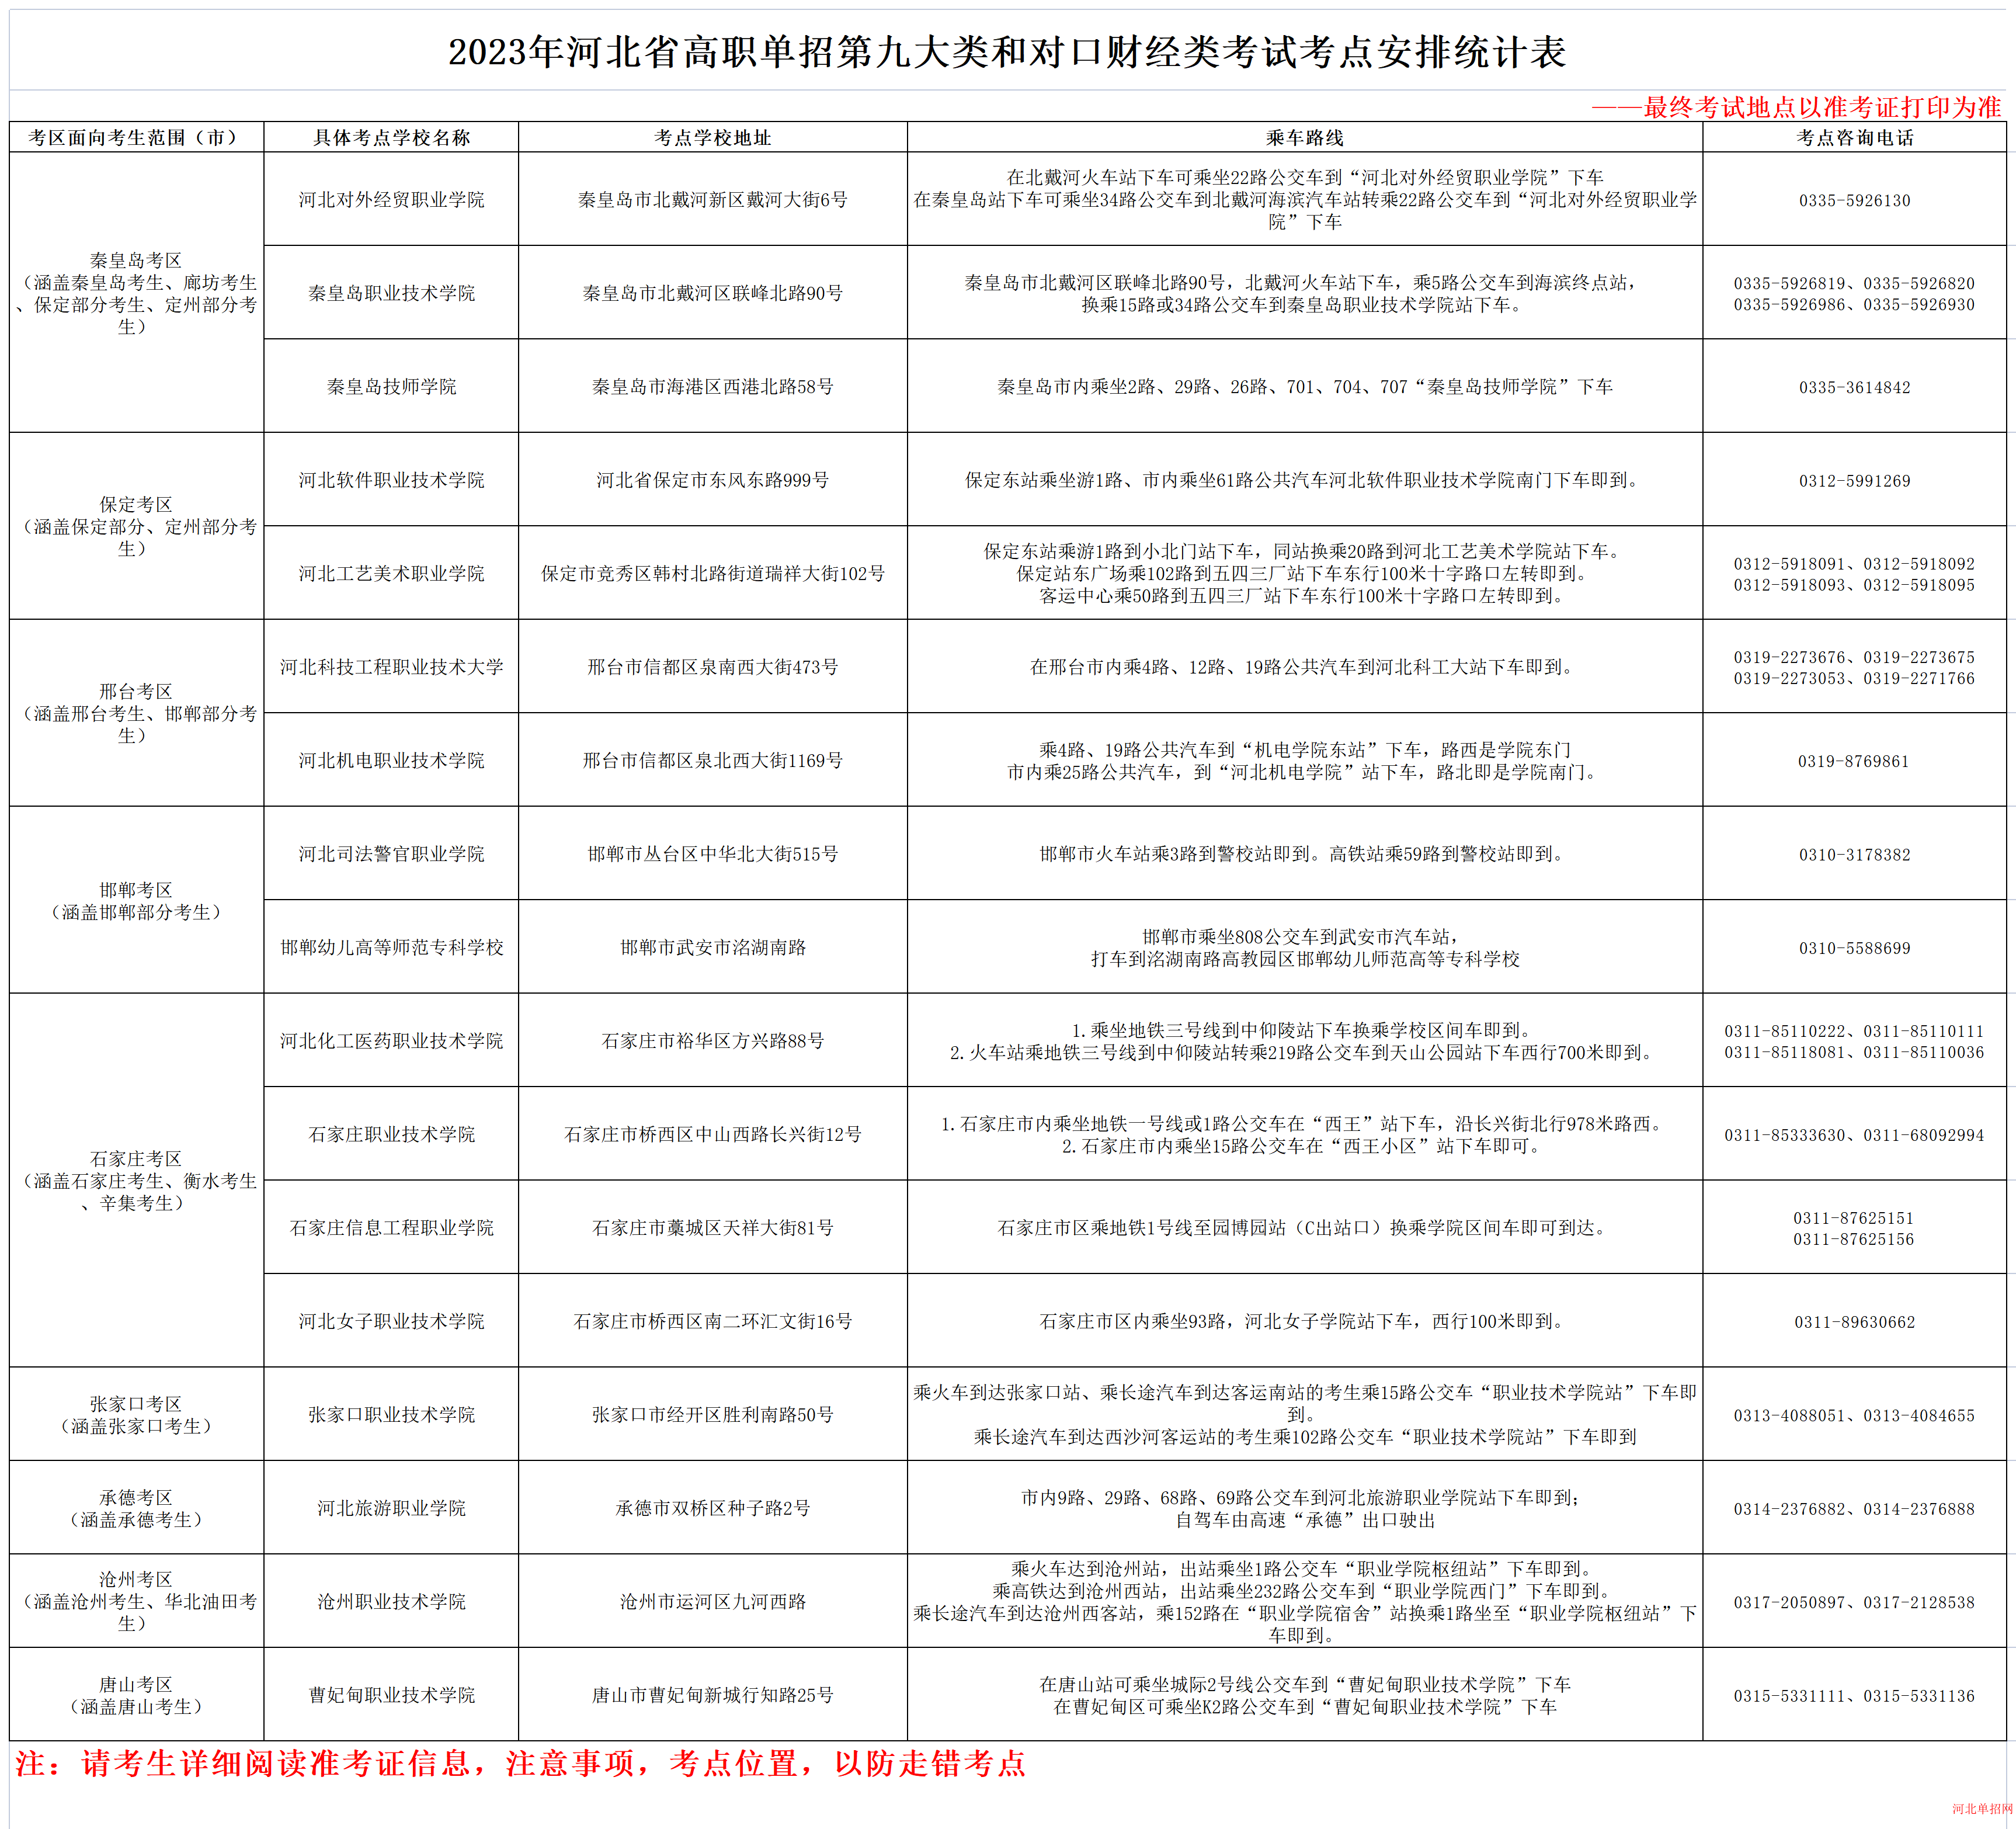 2023年河北省高职单招考试九类和对口财经类考试考点安排 图1